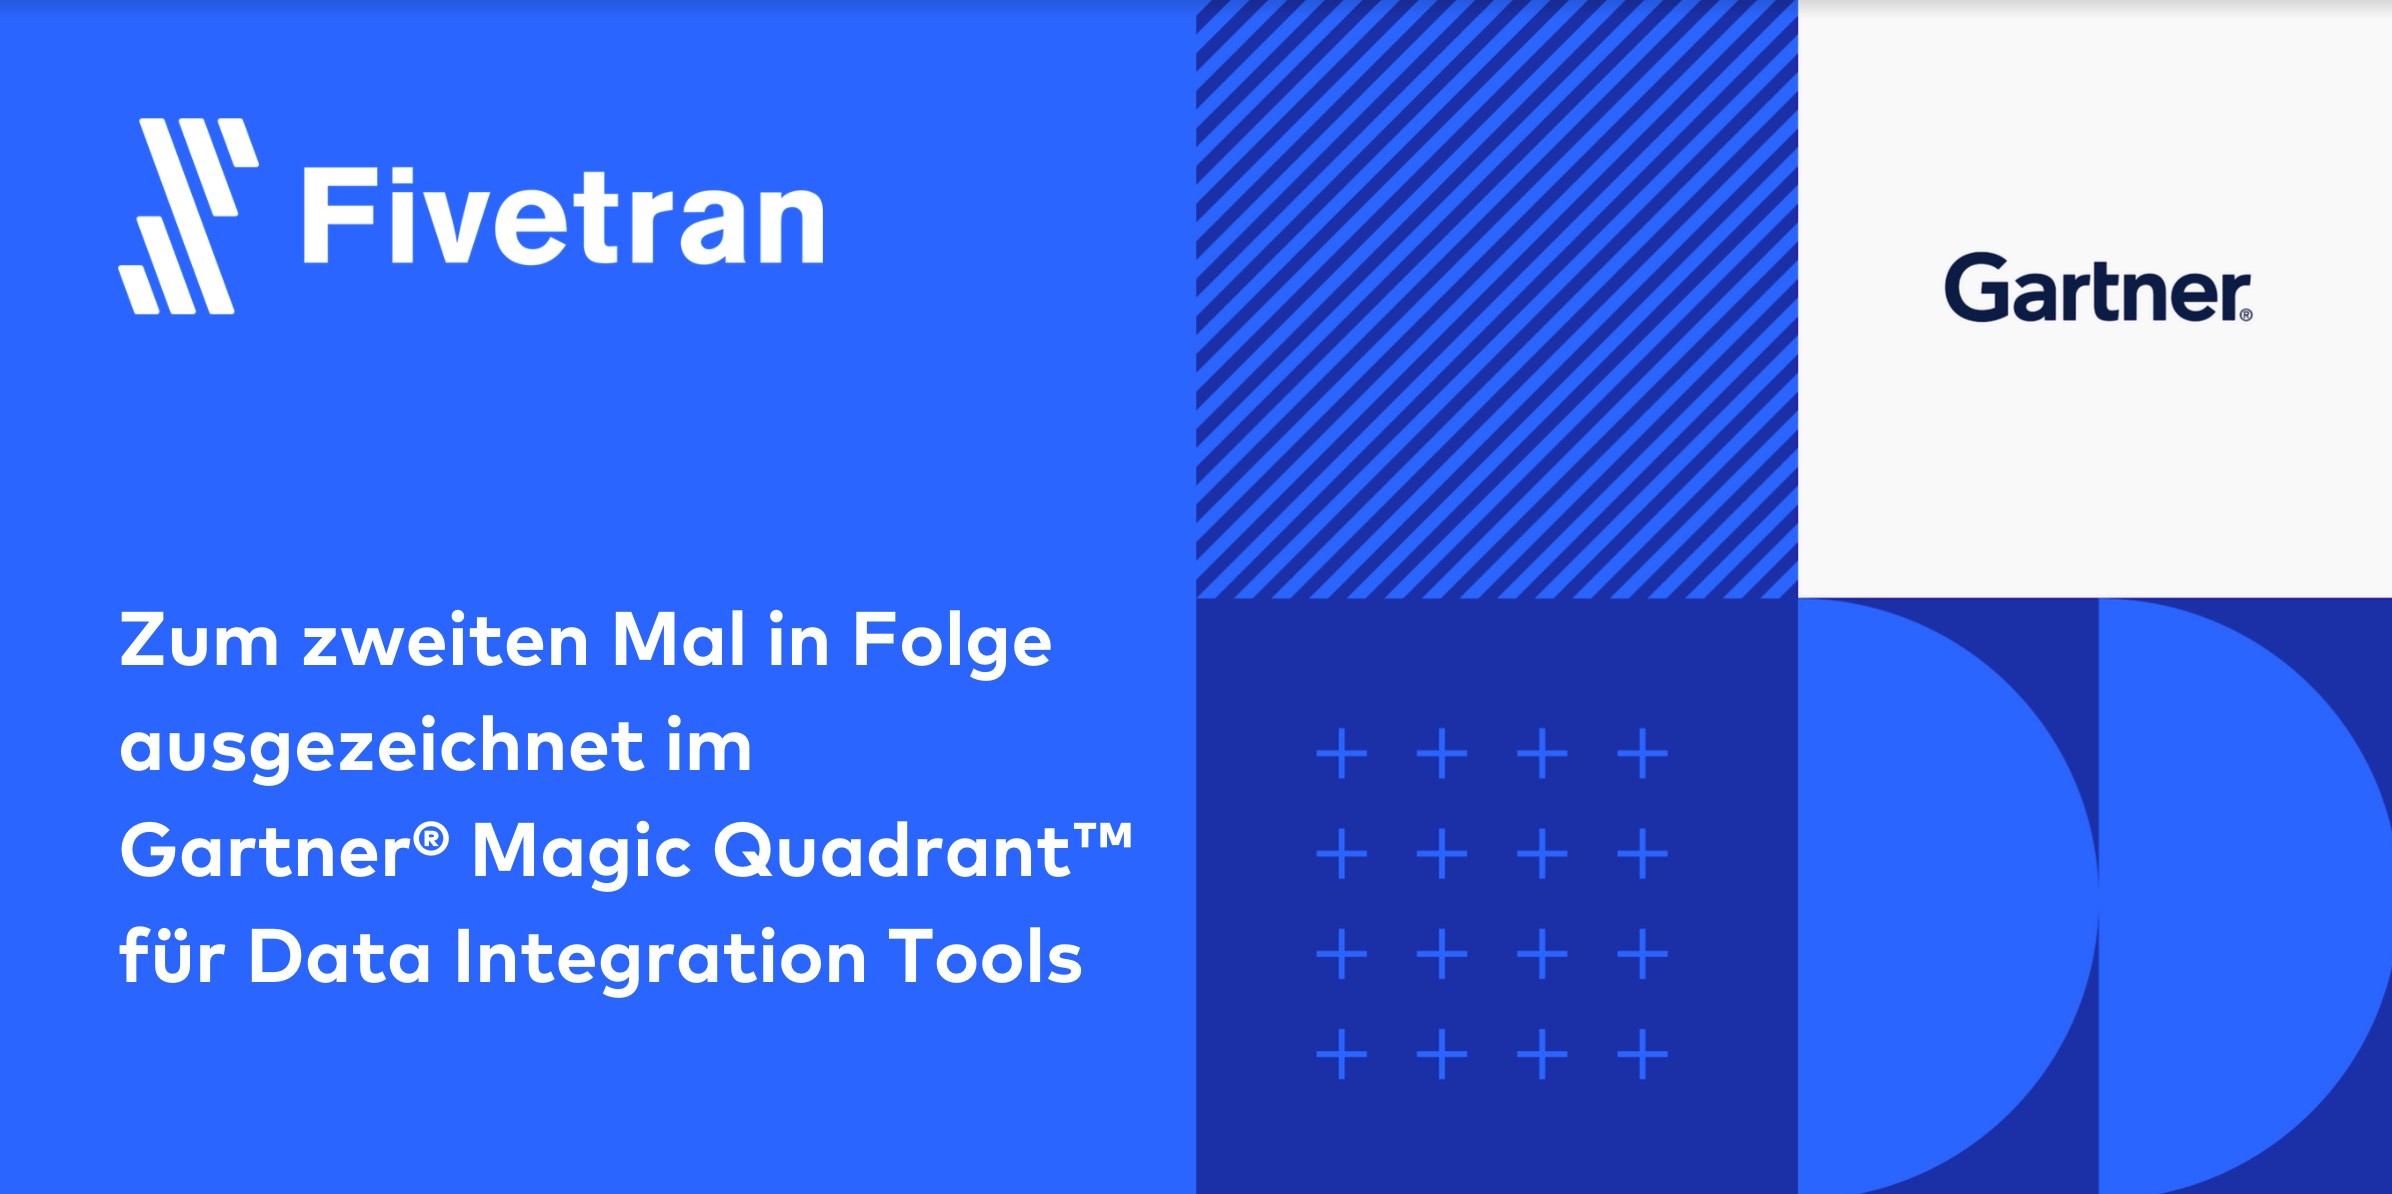 Fivetran ausgezeichnet im Gartner® Magic Quadrant™ für Data Integration Tools 2021